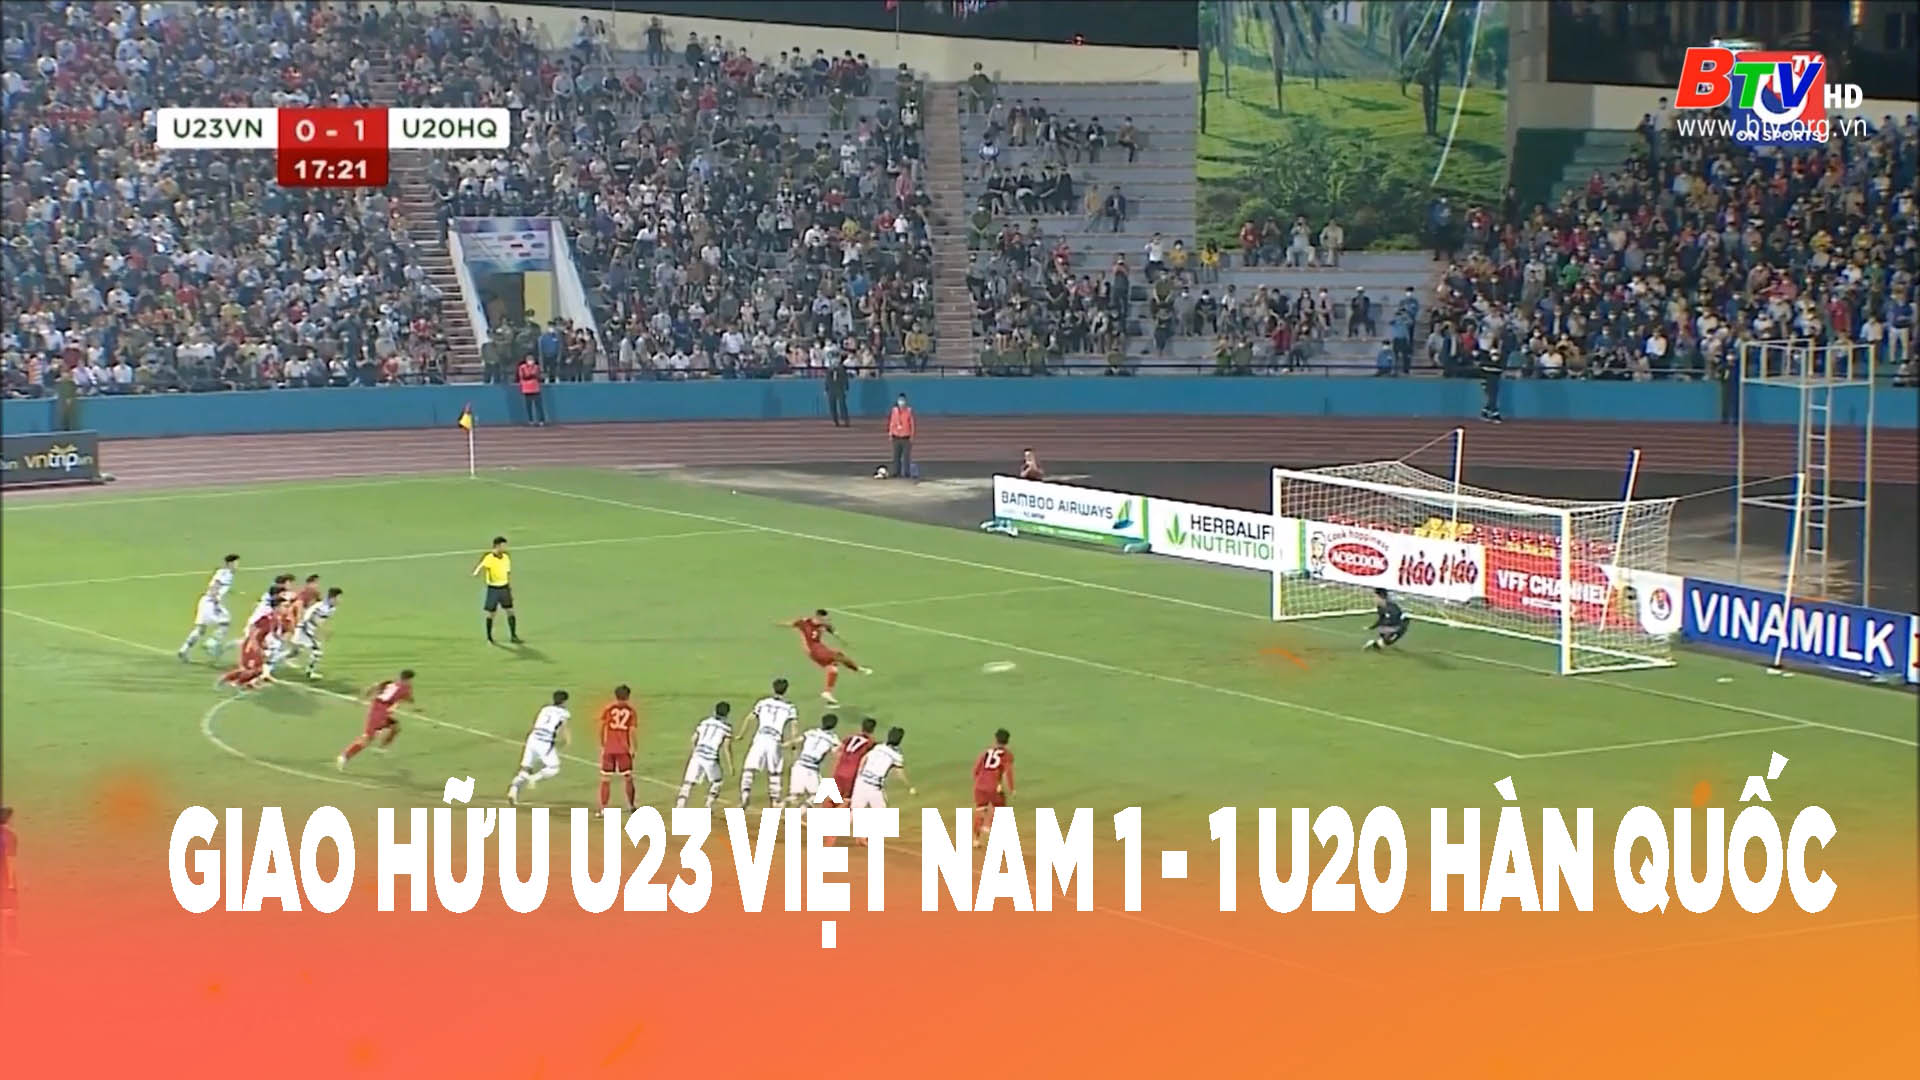 Giao hữu U23 Việt Nam 1-1 U20 Hàn Quốc